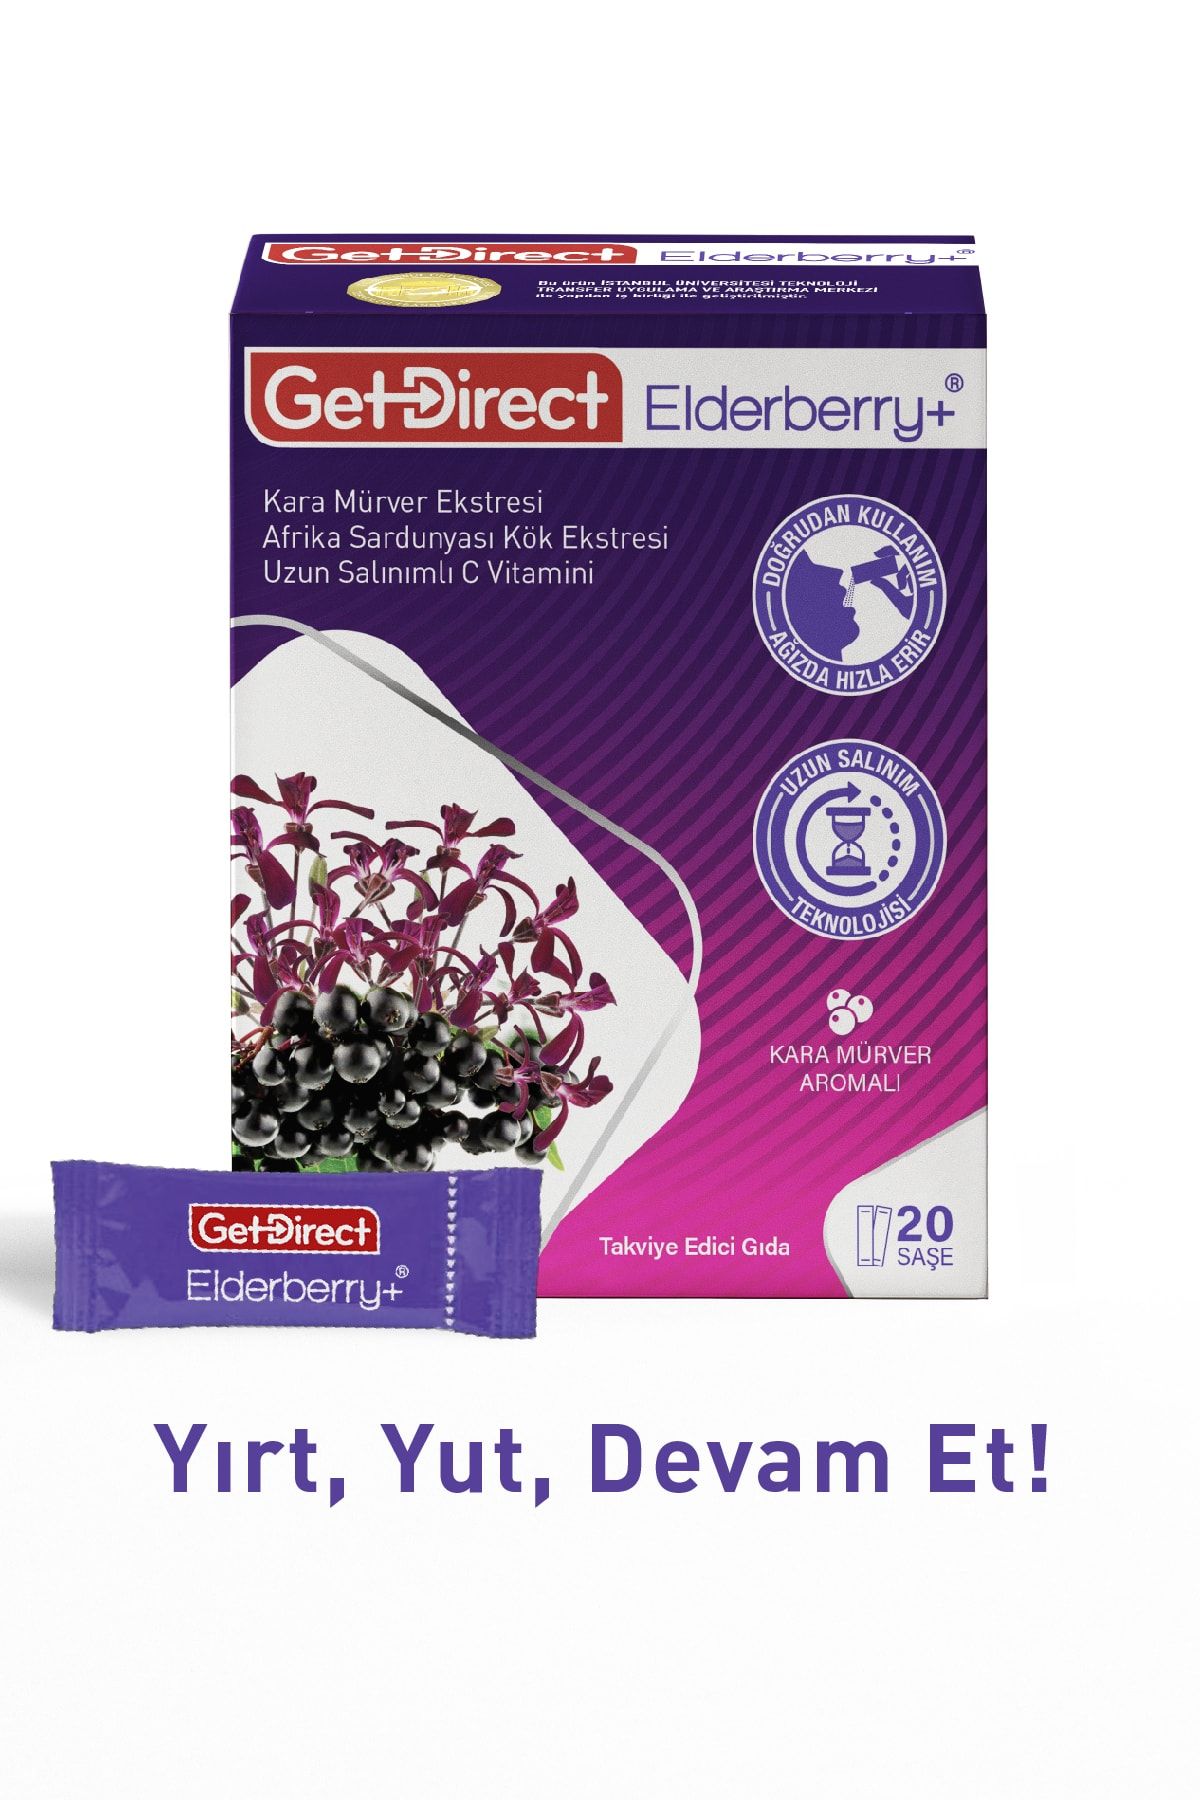 GetDirect Elderberry+ Karamürver Ve Afrika Sardunyası 20 Şase – Uzun Salınımlı C Vitamini, Susuz Kullanım